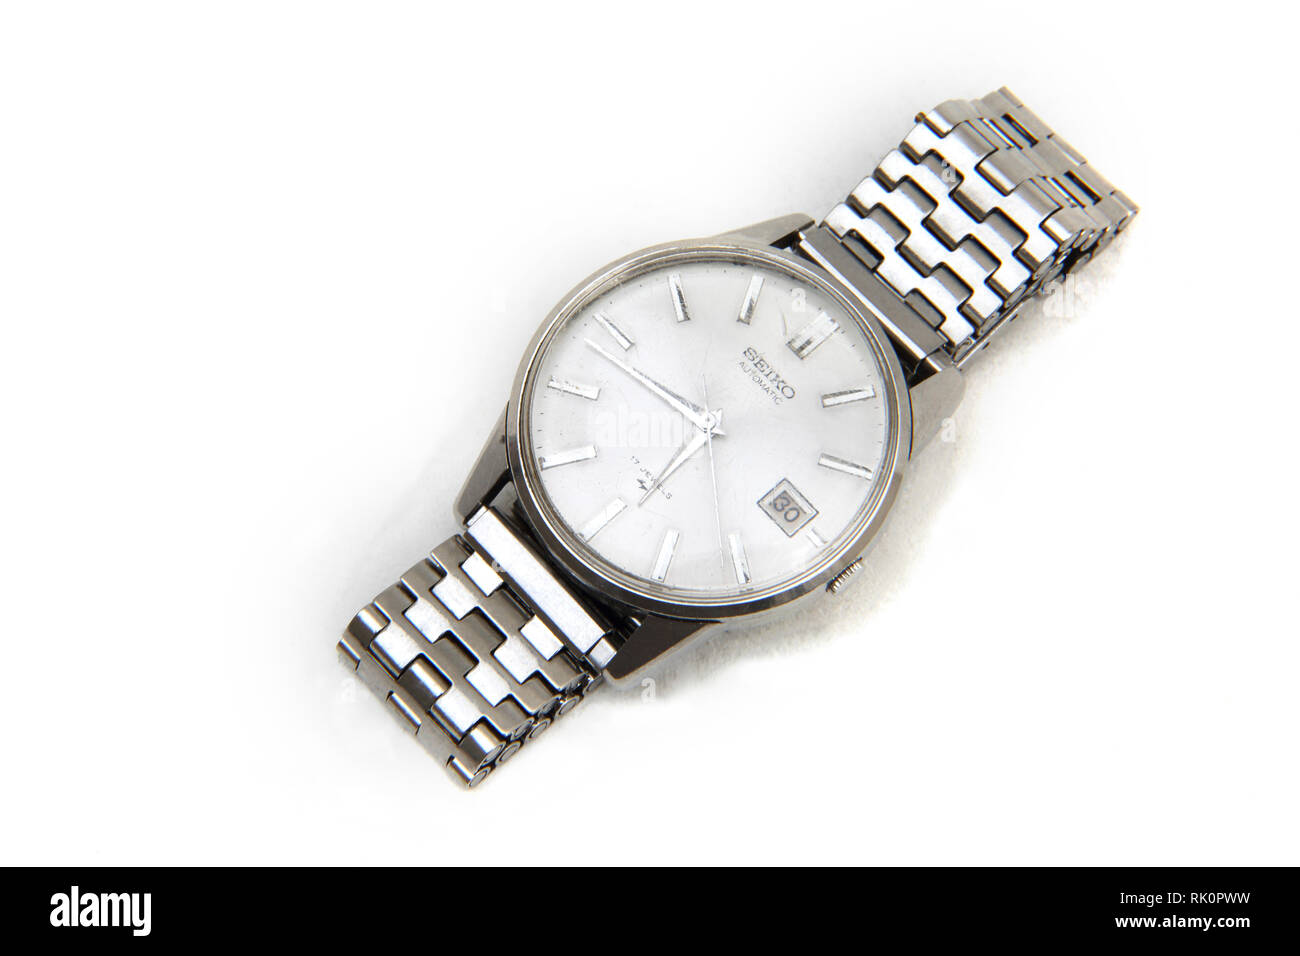 Seiko Automatic Wrist Watch Stock Photo